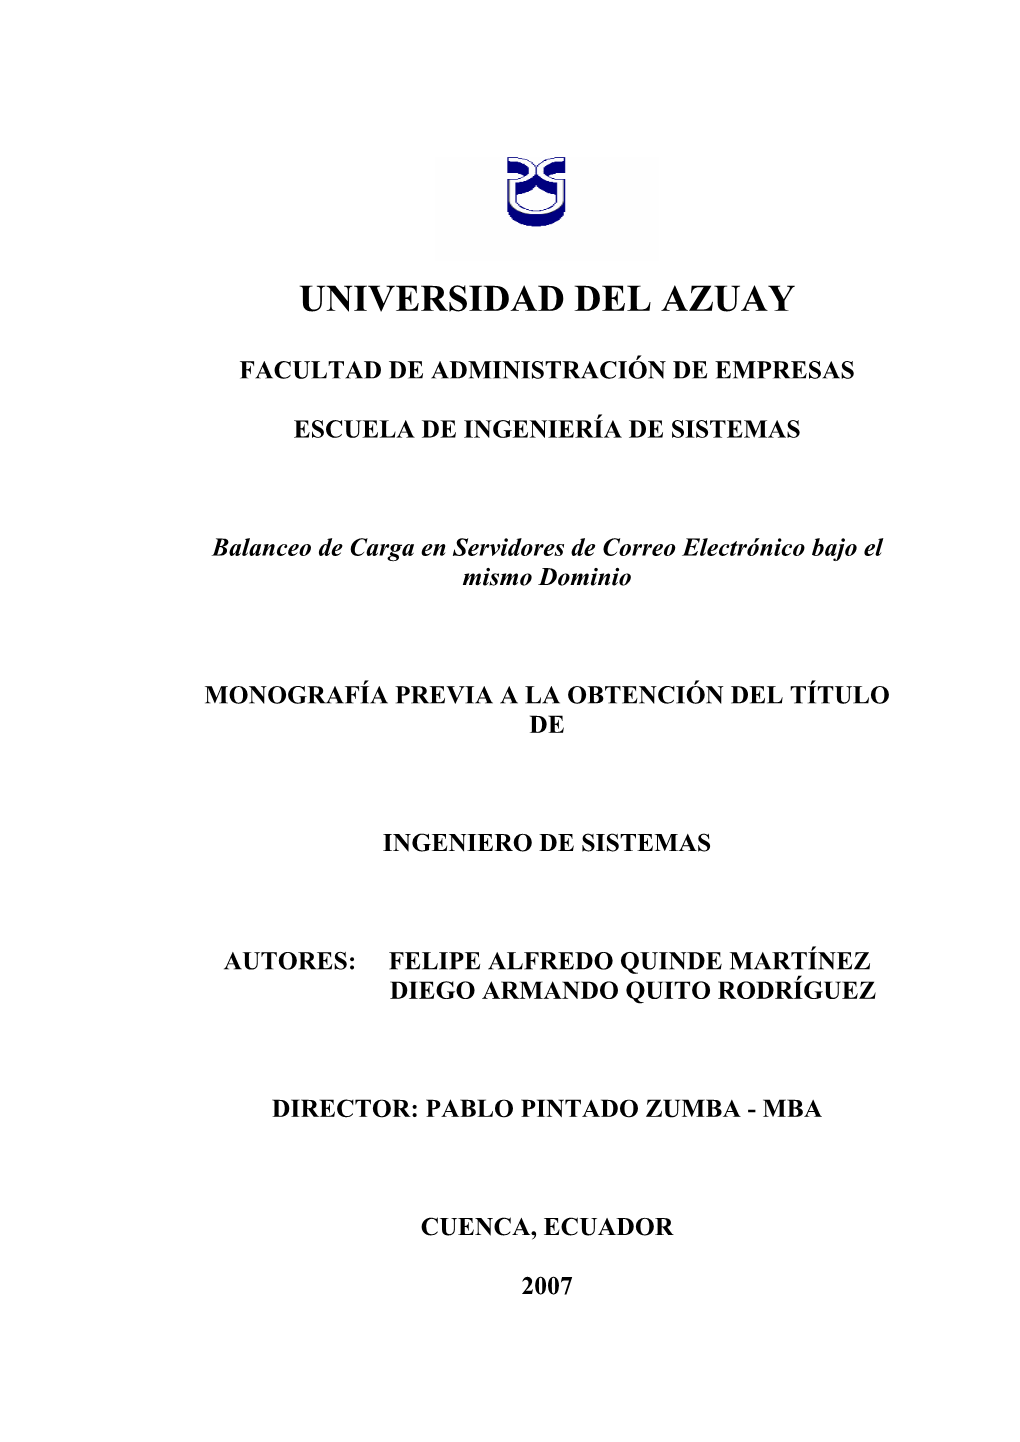 Universidad Del Azuay